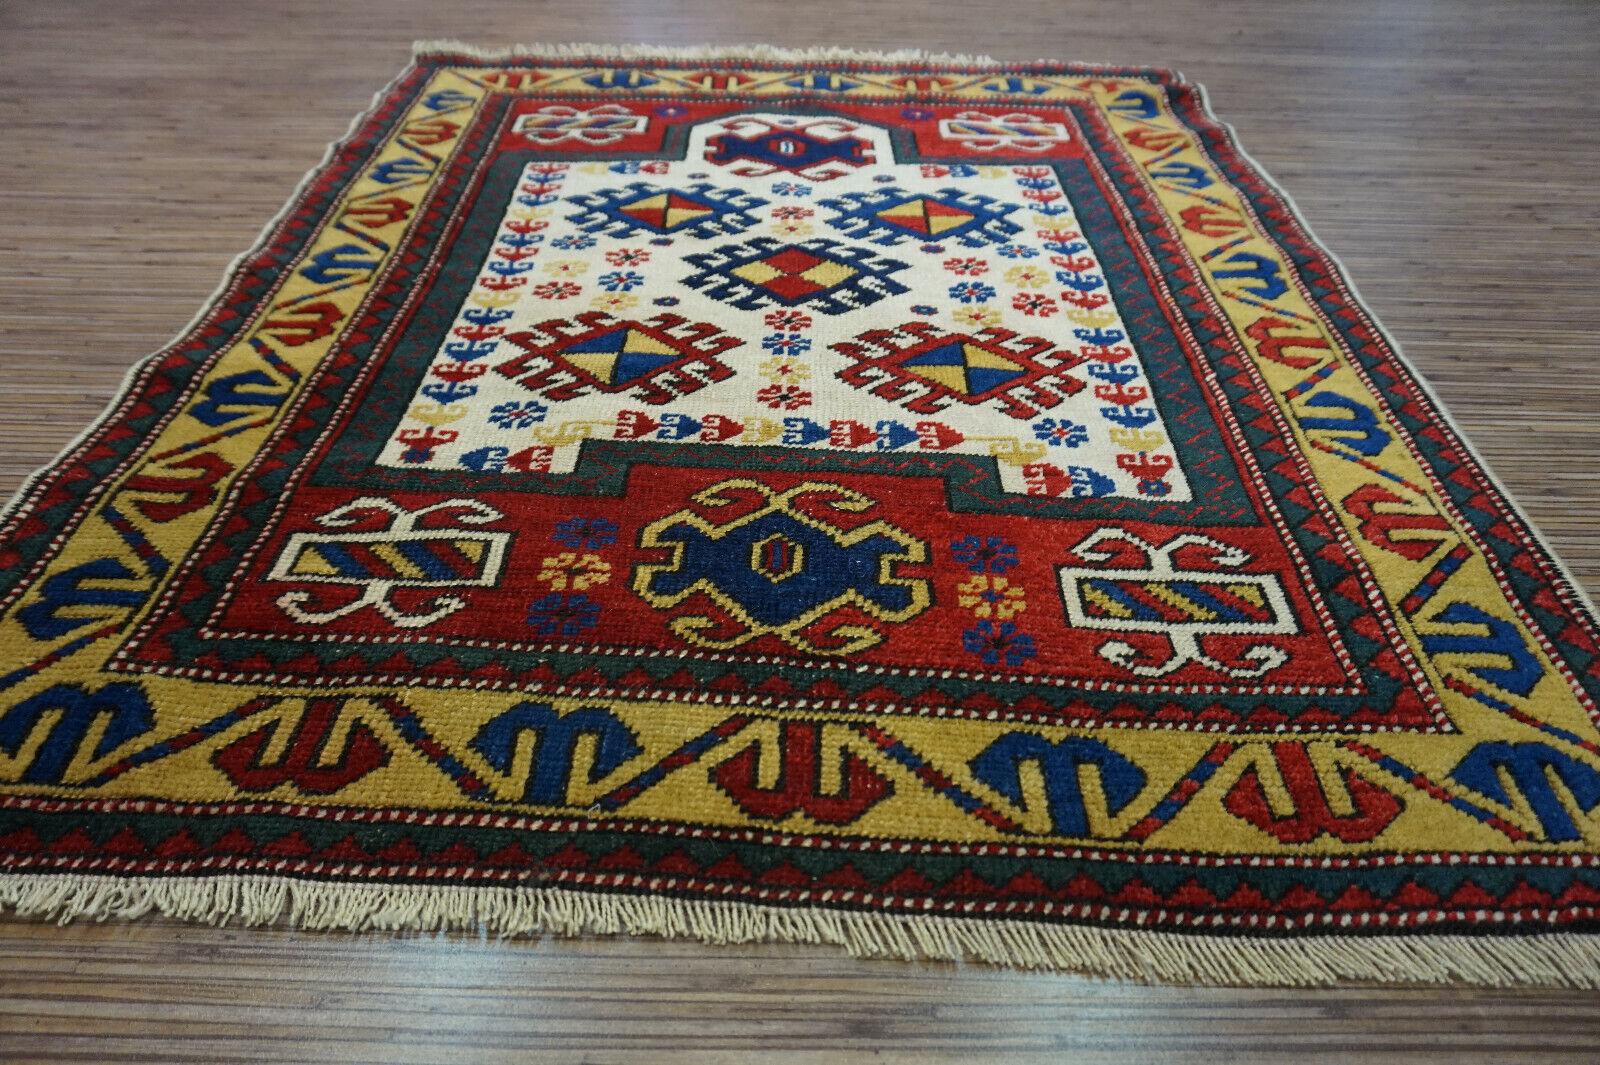 Bringen Sie einen Hauch zeitloser Eleganz in Ihren Raum mit diesem handgefertigten antiken kaukasischen Gebetsteppich. Das in den 1940er Jahren gefertigte, exquisite Stück misst 90 x 112 cm und ist damit eine vielseitige Ergänzung für jeden Raum.